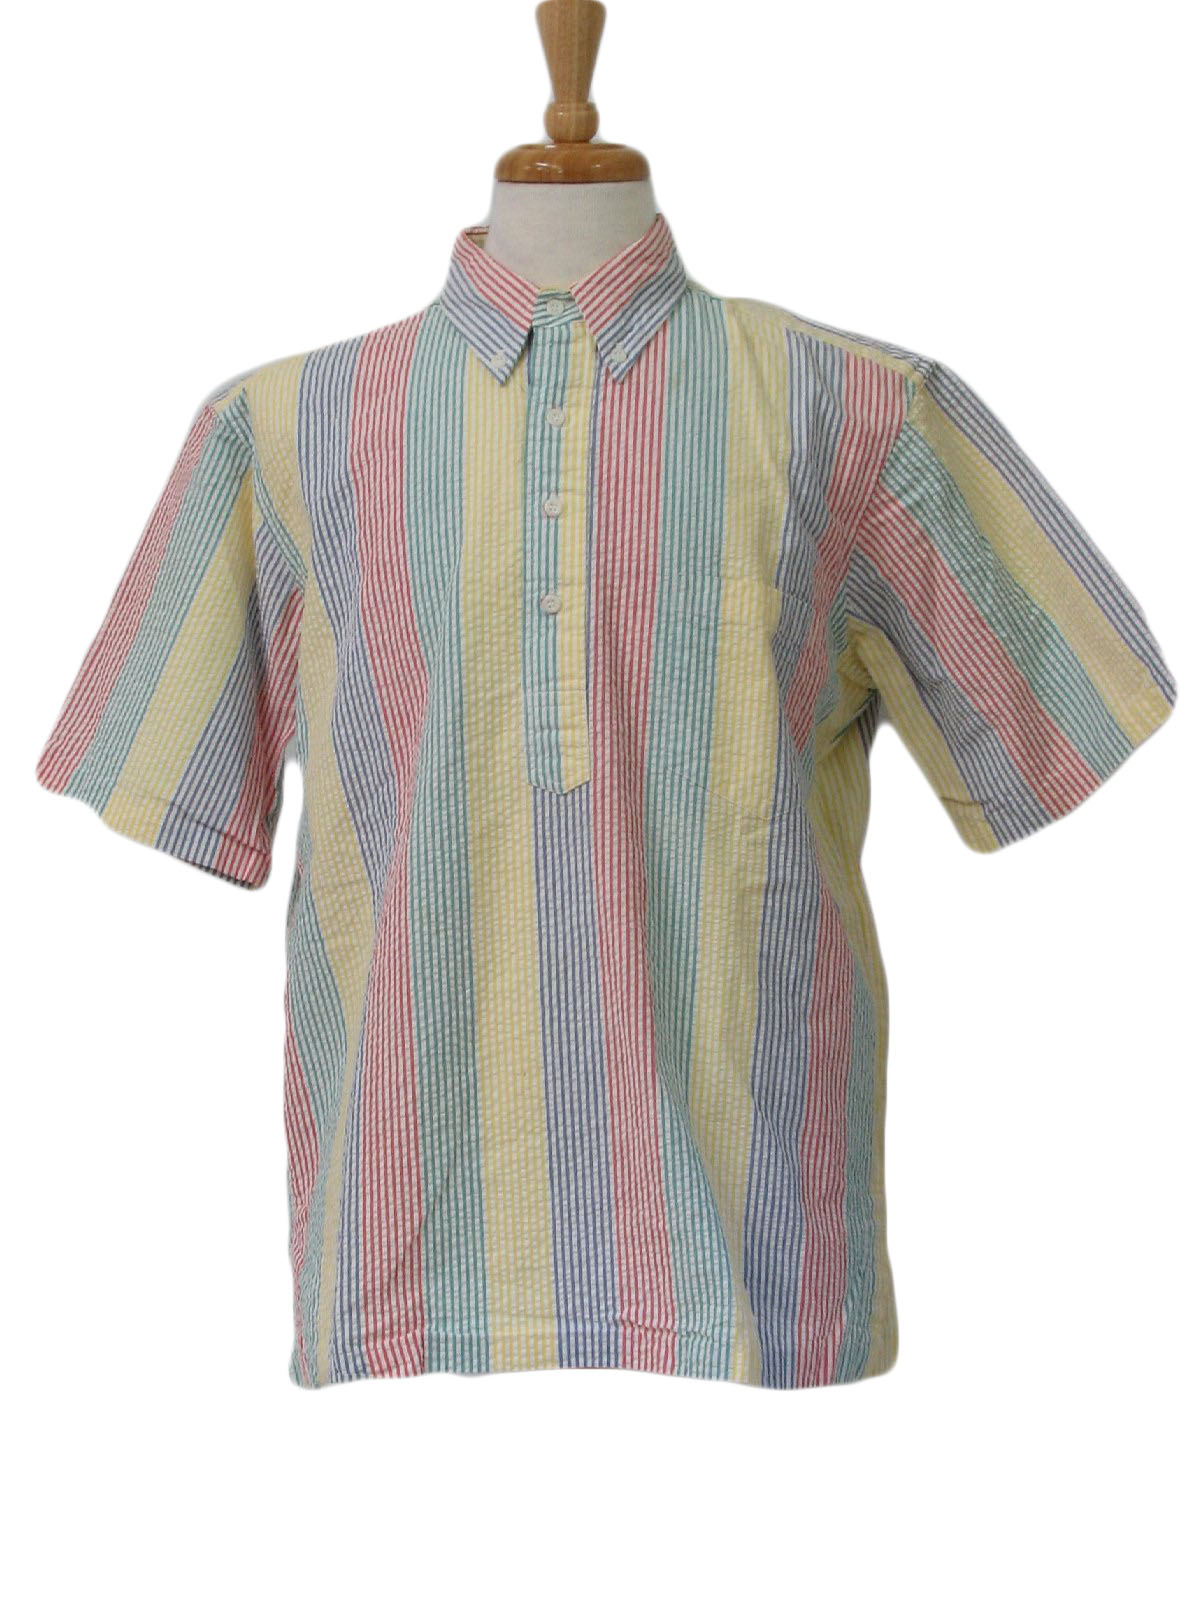 Download Reyn Spooner 1980s Vintage Shirt: 80s -Reyn Spooner- Mens ...